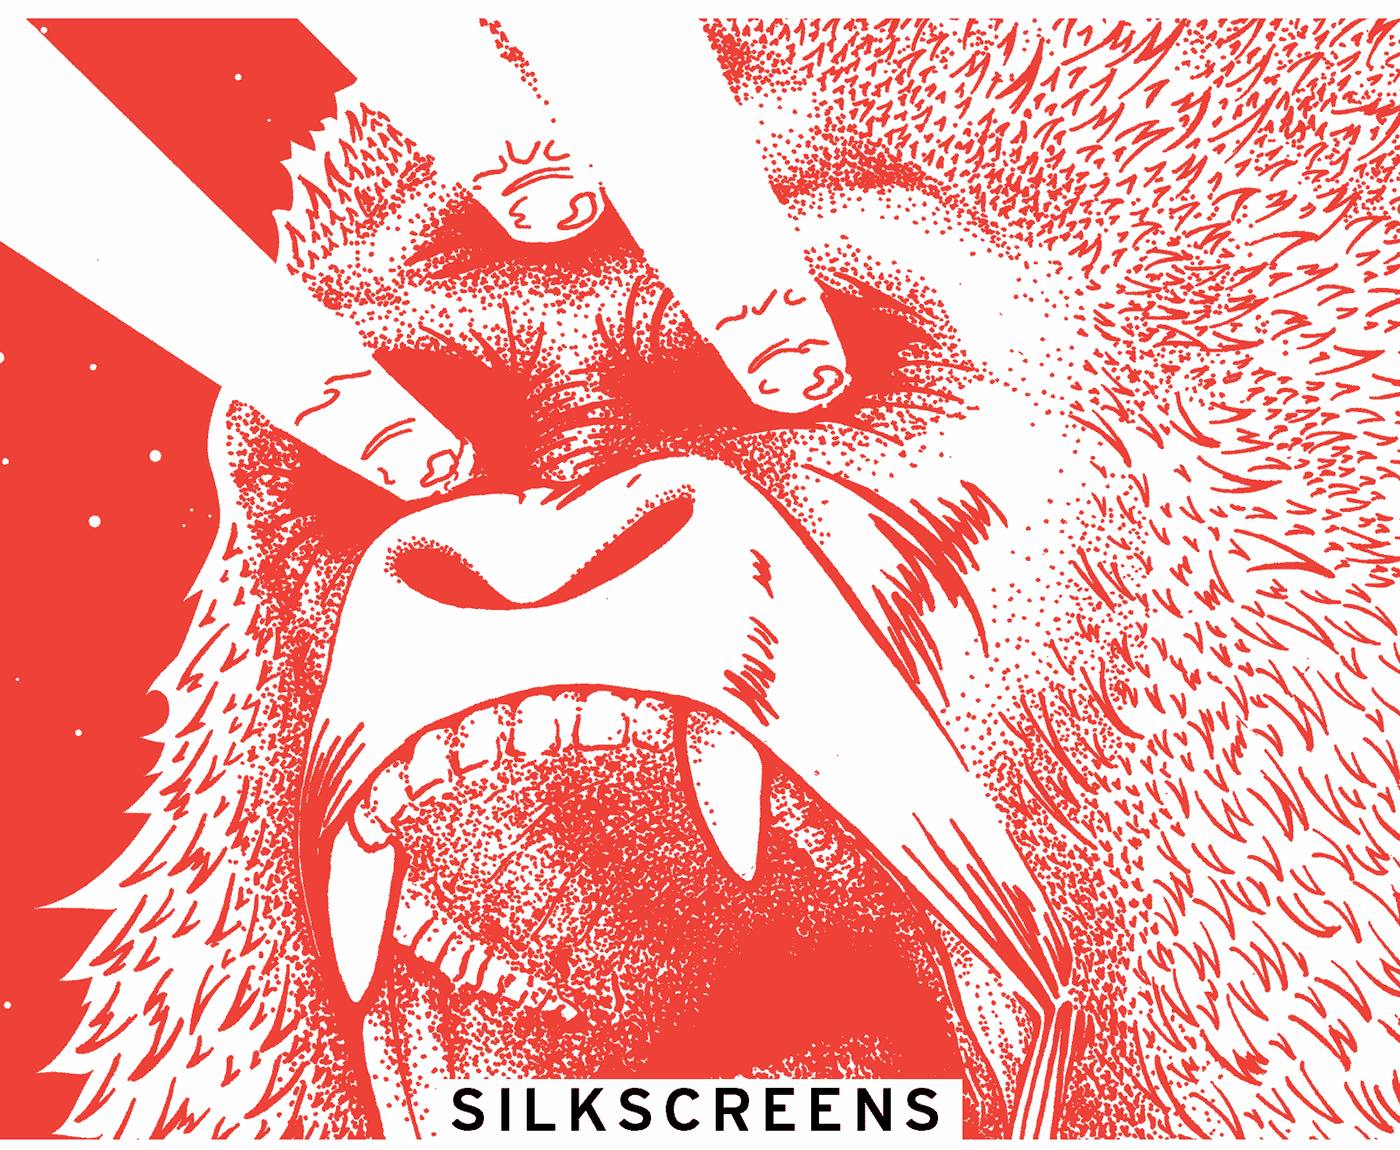 silkscreen screenprint animals bear gorilla crow shark swan bull third eye beam Fur dotwork stippling poster